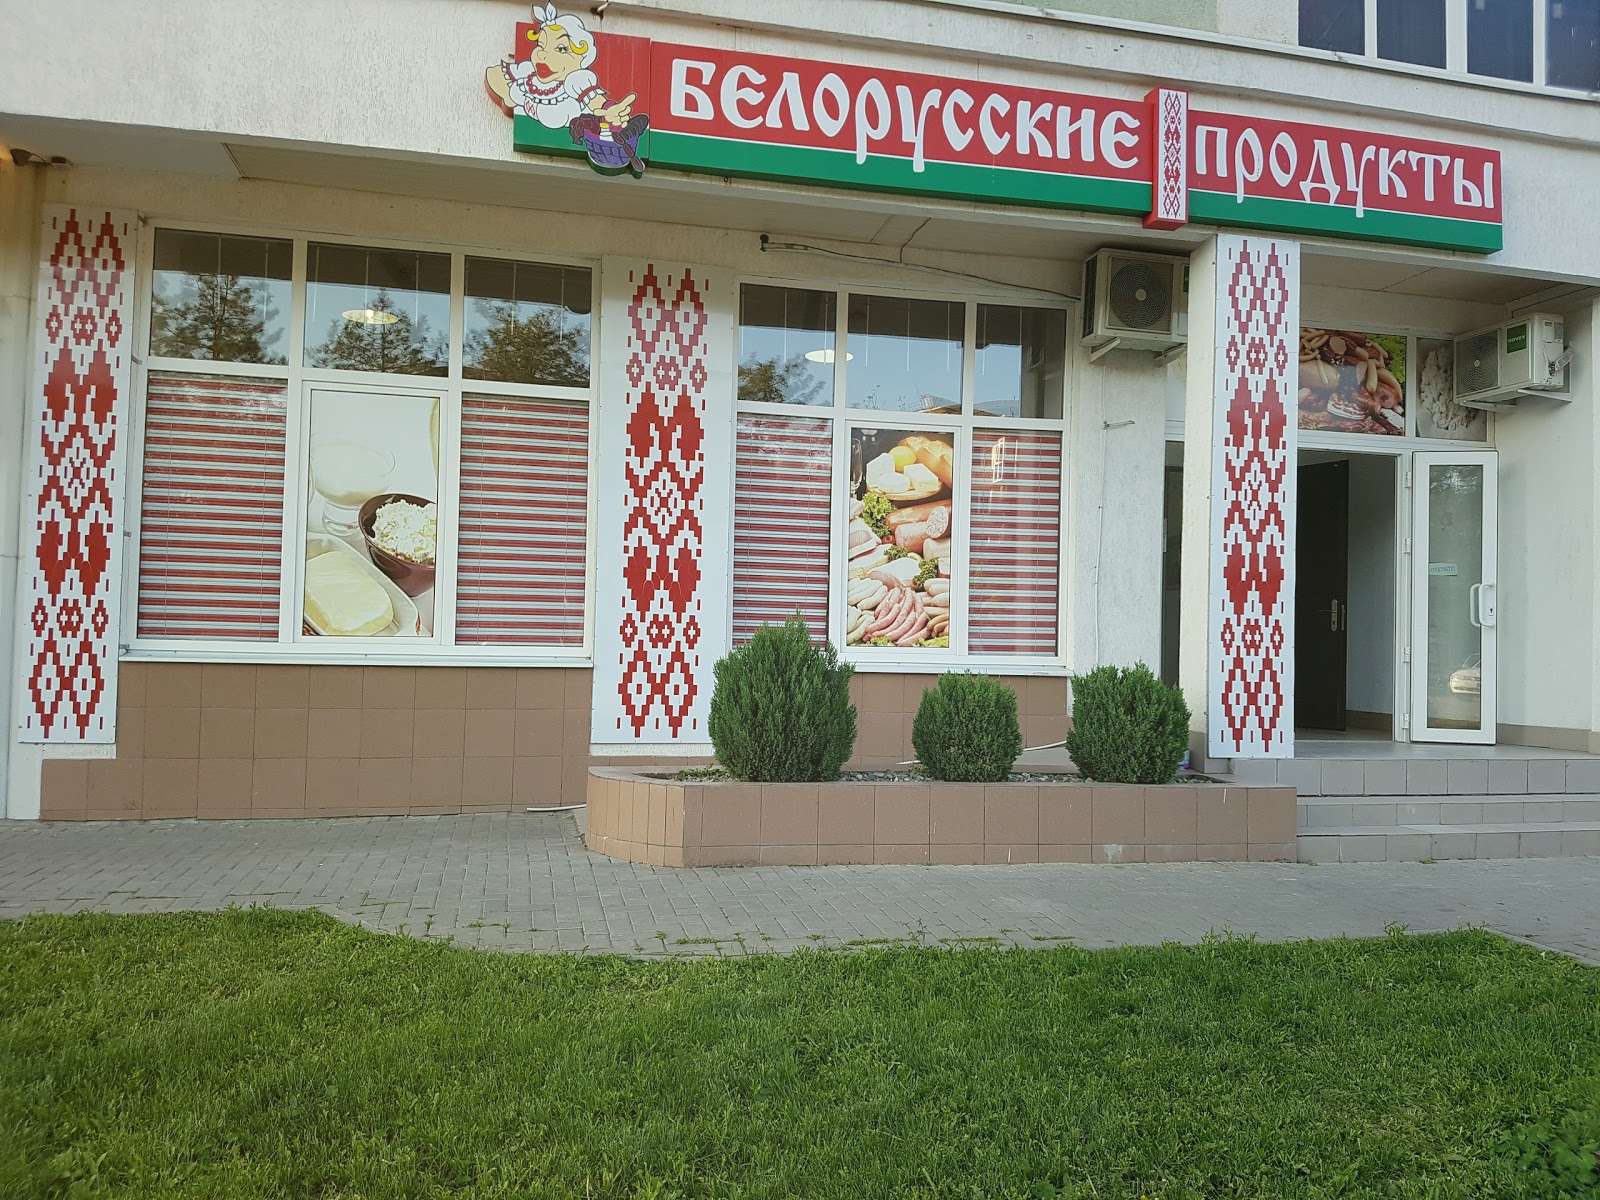 Белорусская продукция